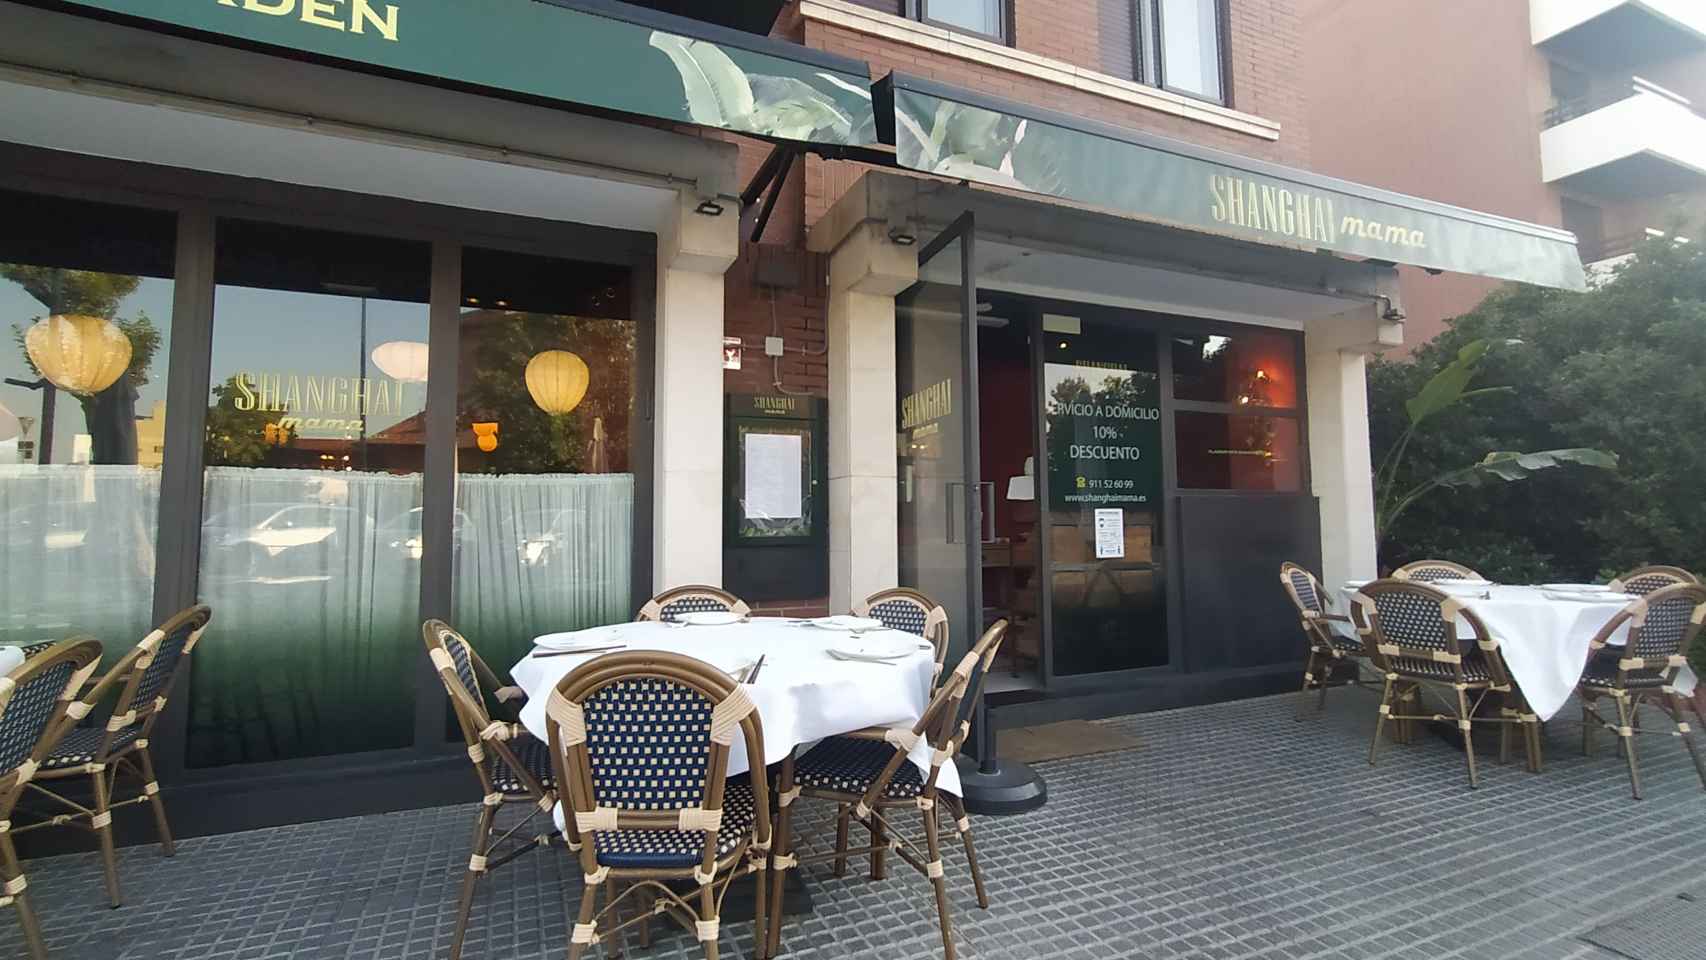 El restaurante Shanghai mama, situado en el número 1 de la calle Grecia, en Pozuelo de Alarcón (Madrid).